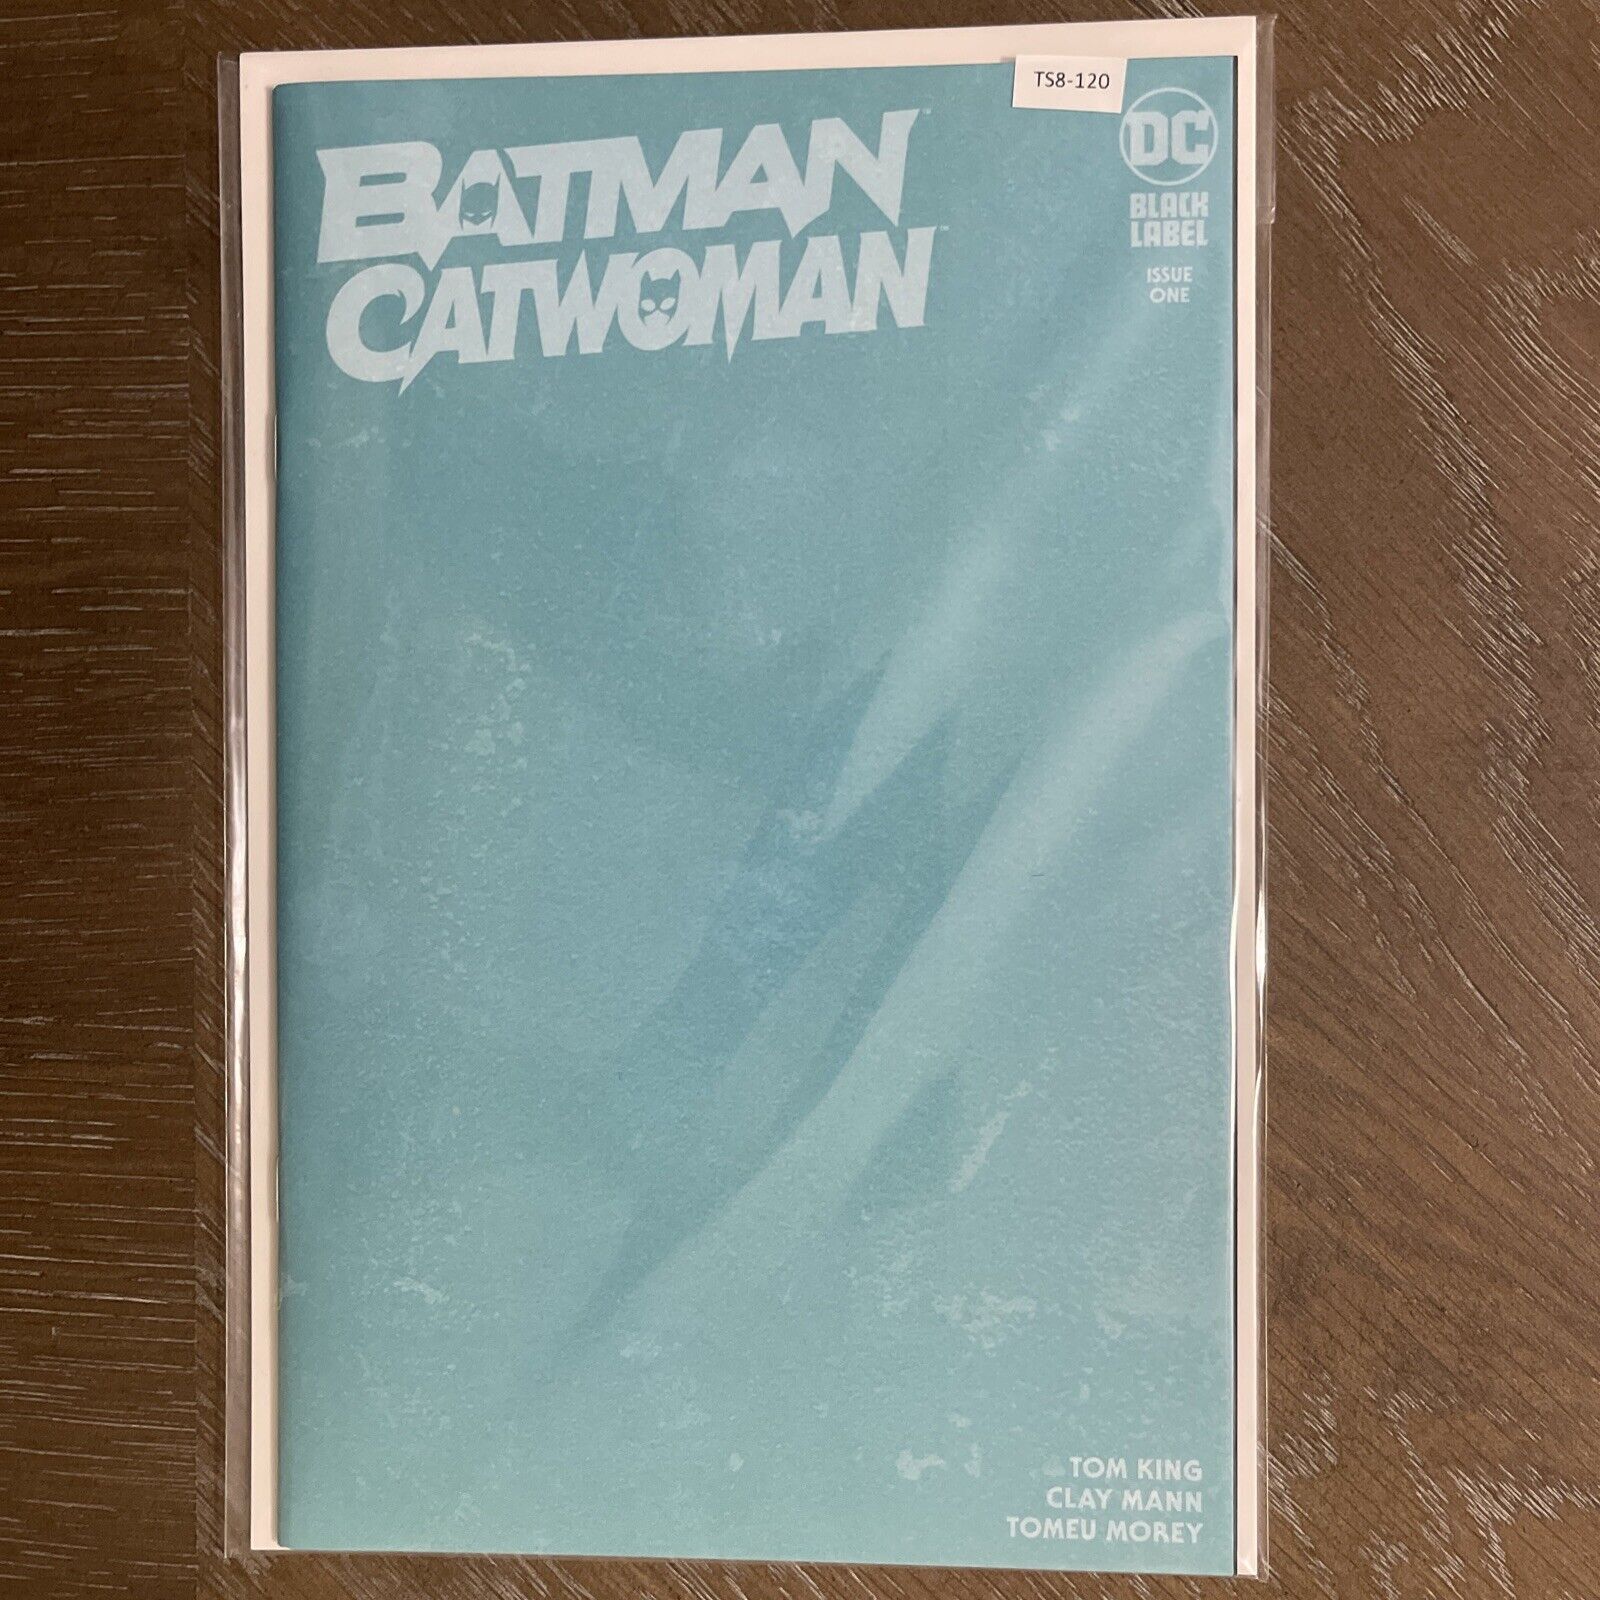 BATMAN CATWOMAN #1 DC COMICS VARIANT HIGH GRADE 9.8 TS8-120